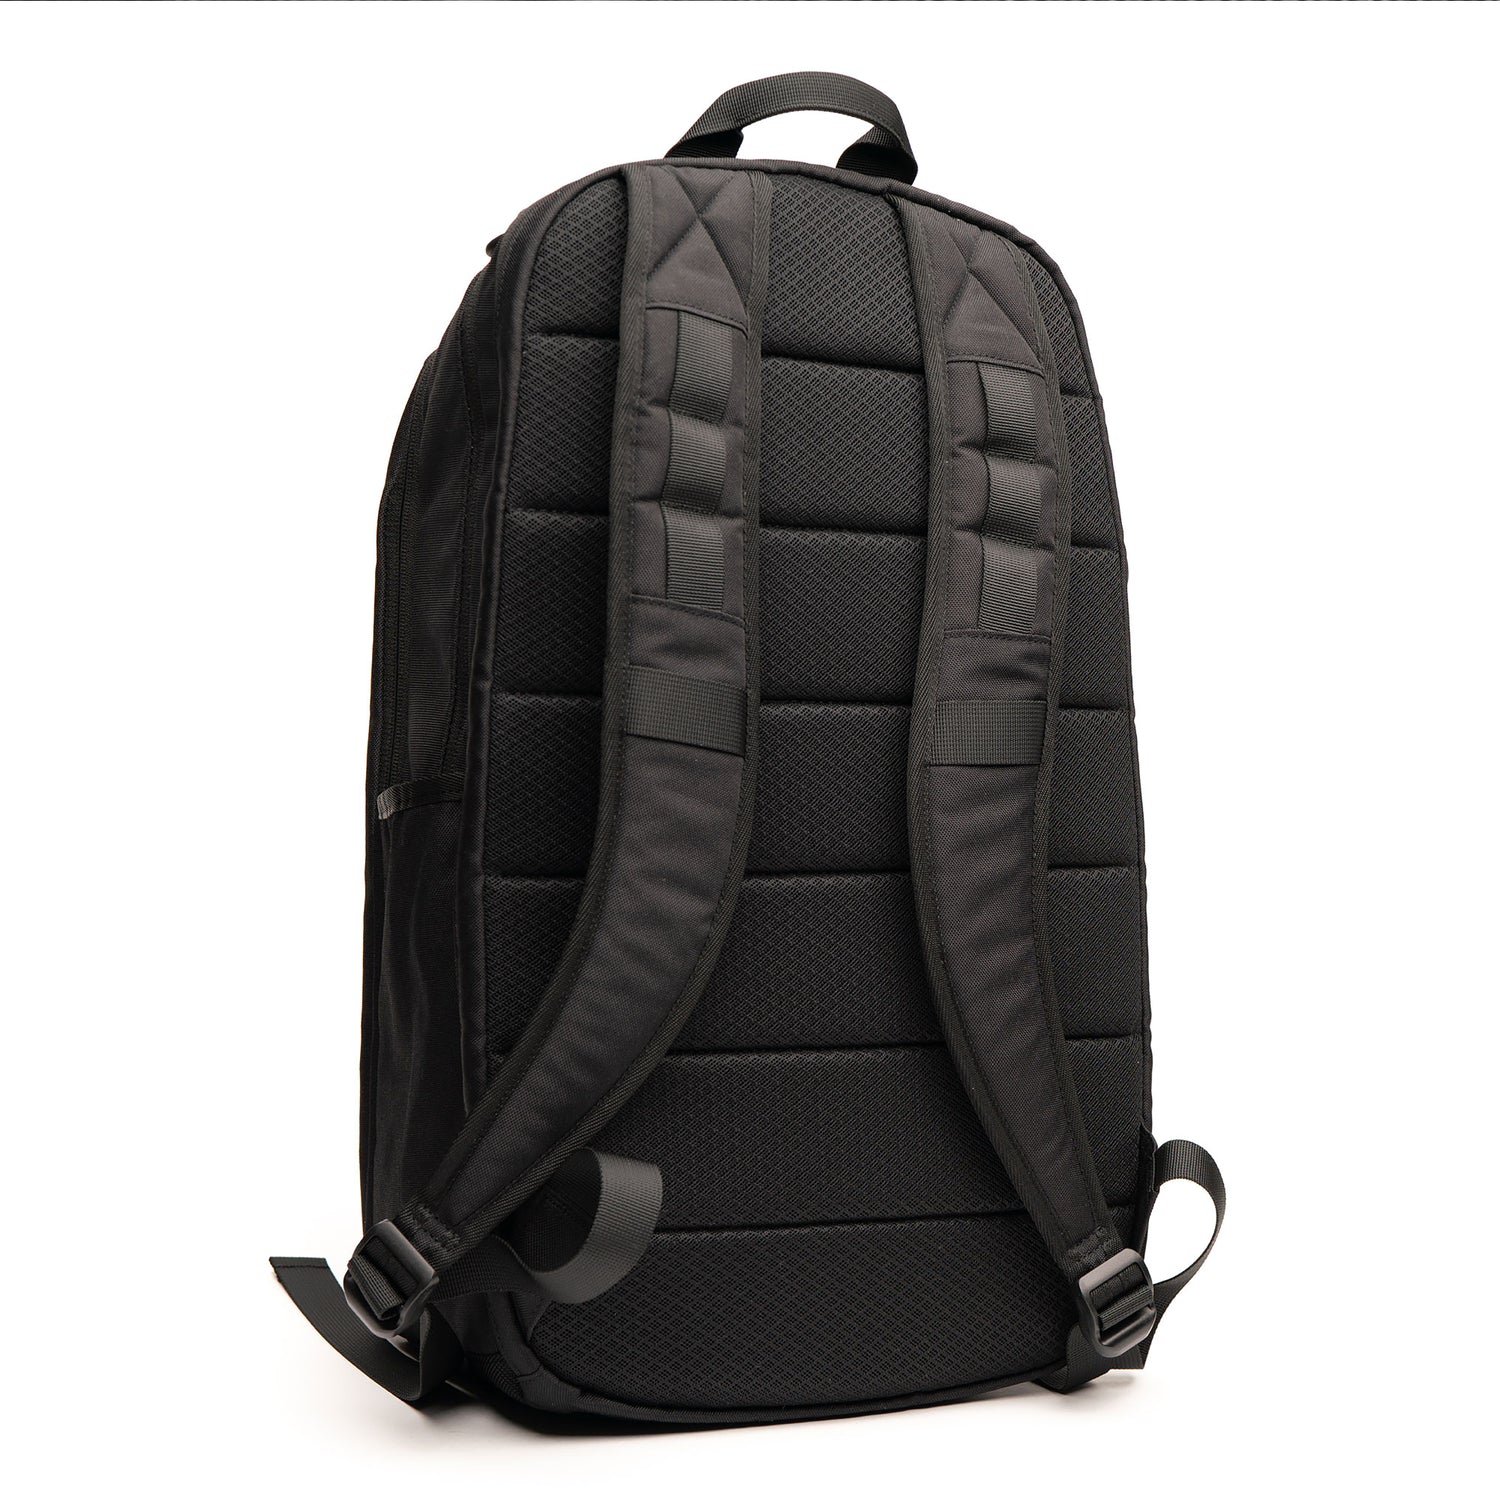 EDC Travel Black Backpack  |  concealed carry backpack